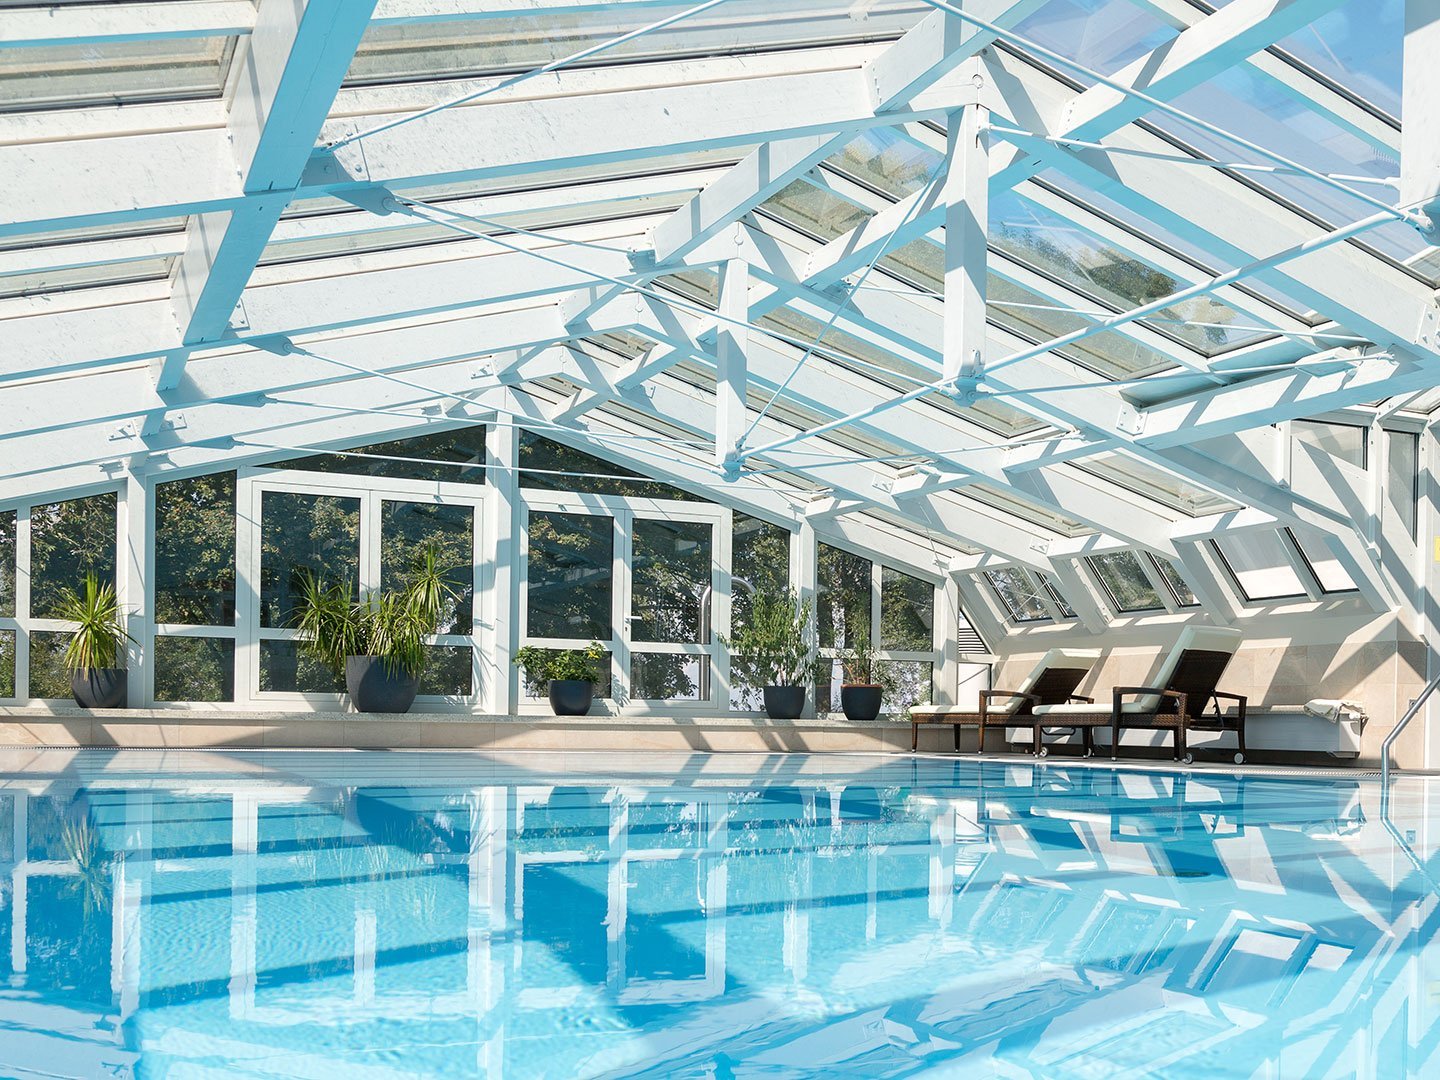 Pool des Hotel Schwedi. Der Pool befindet sich Indoor und ist lichtdurchflutet. Es gibt Glaswände und ein Glasdach.